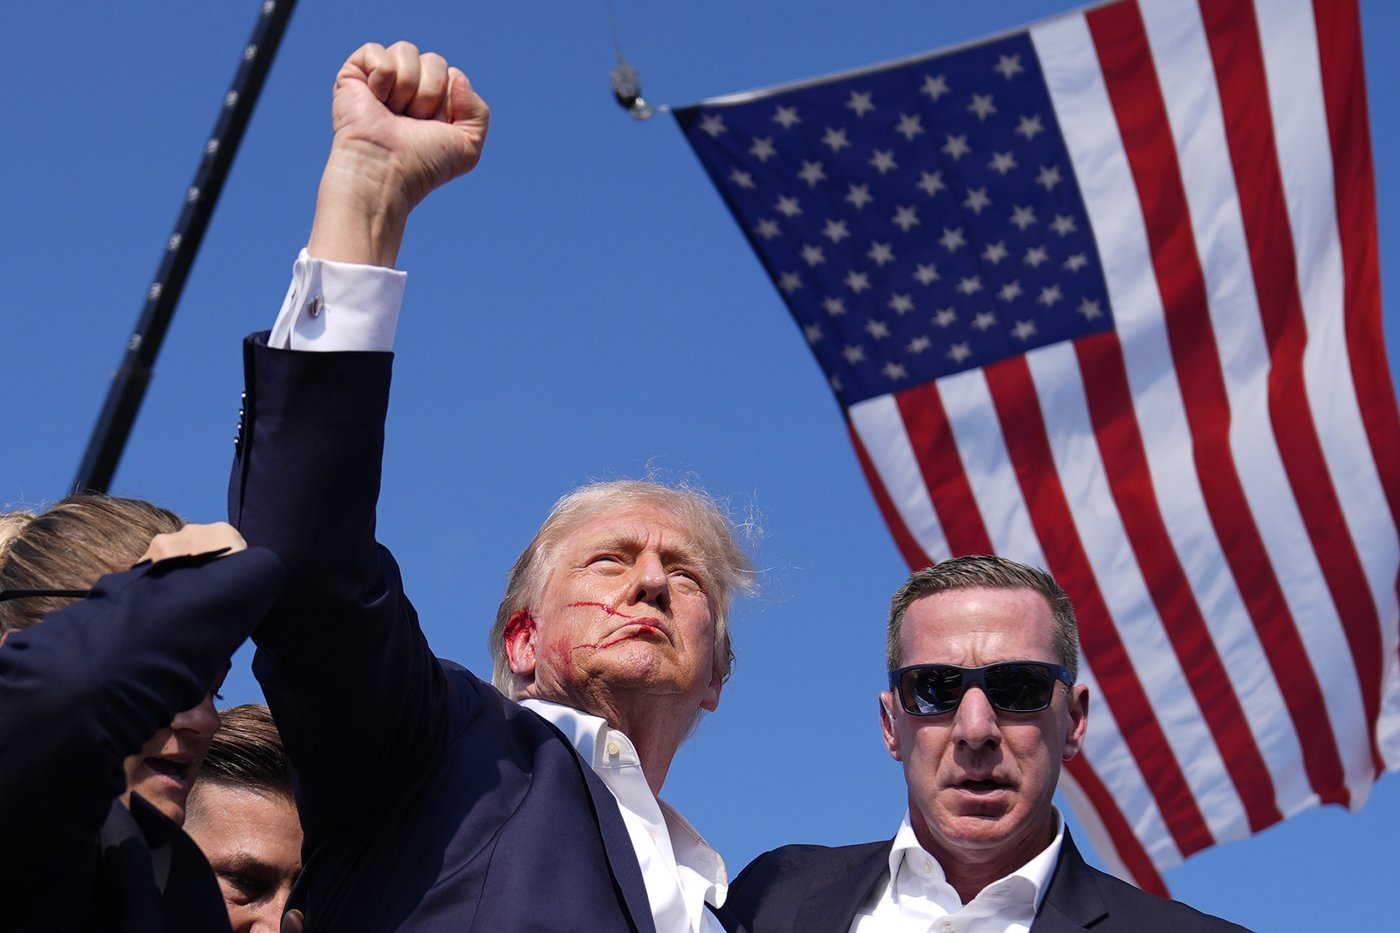 L’attentat contre Trump démontre la polarisation politique aux États-Unis